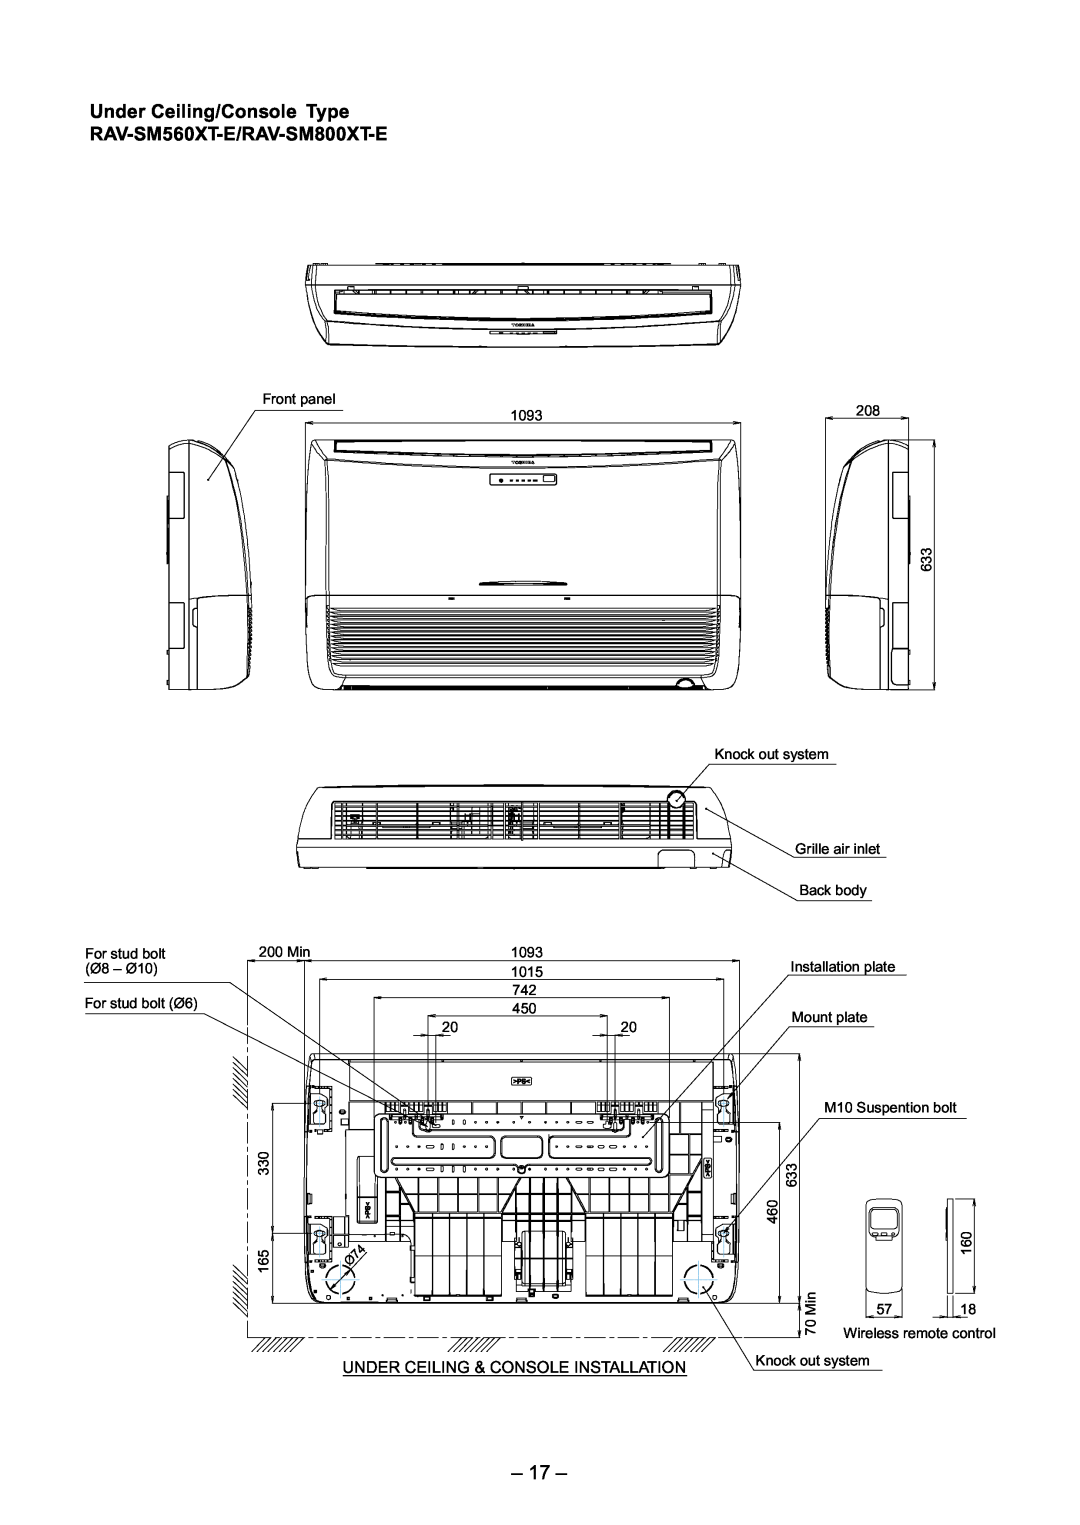 Toshiba RAV-SM800BT-E, RAV-SM800AT-E, RAV-SM800UT-E 17, Under Ceiling/Console Type, RAV-SM560XT-E/RAV-SM800XT-E 